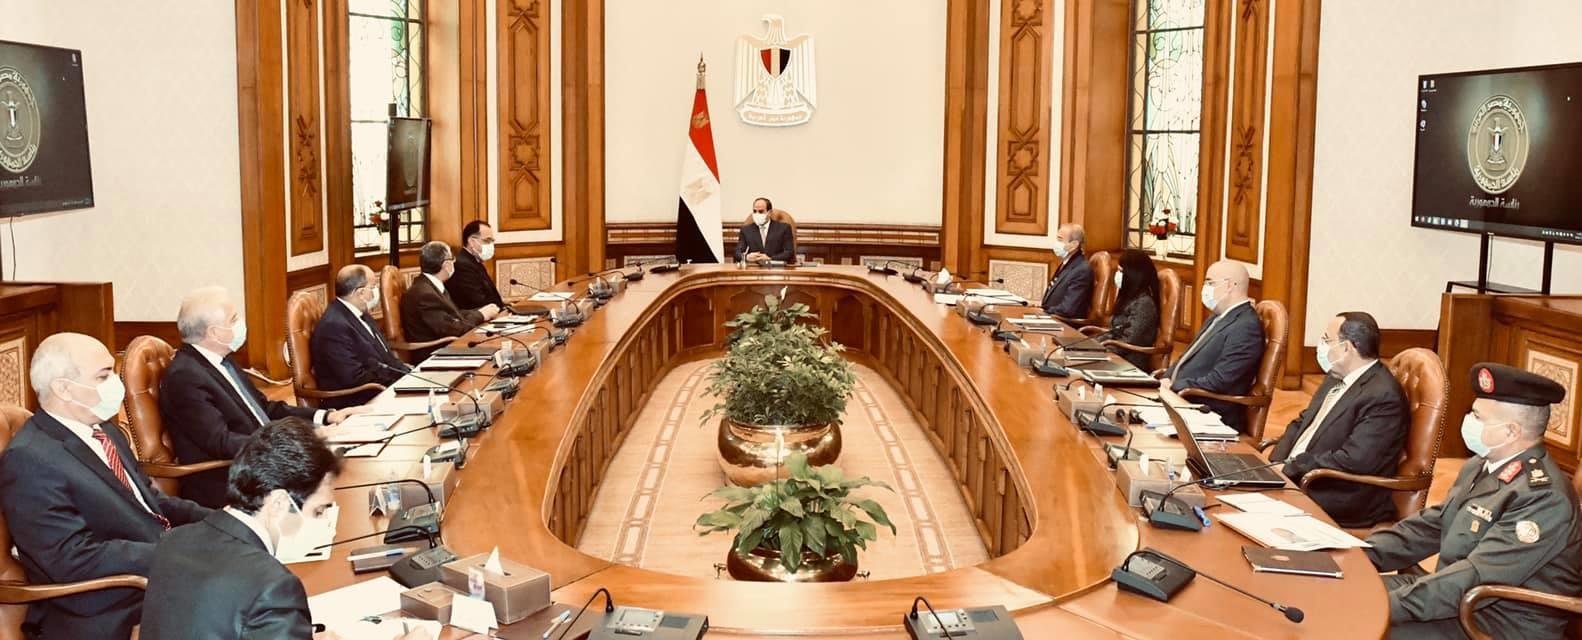 استقبل الرئيس عبدالفتاح السيسي اليوم الاثنين مجموعة ميونيخ